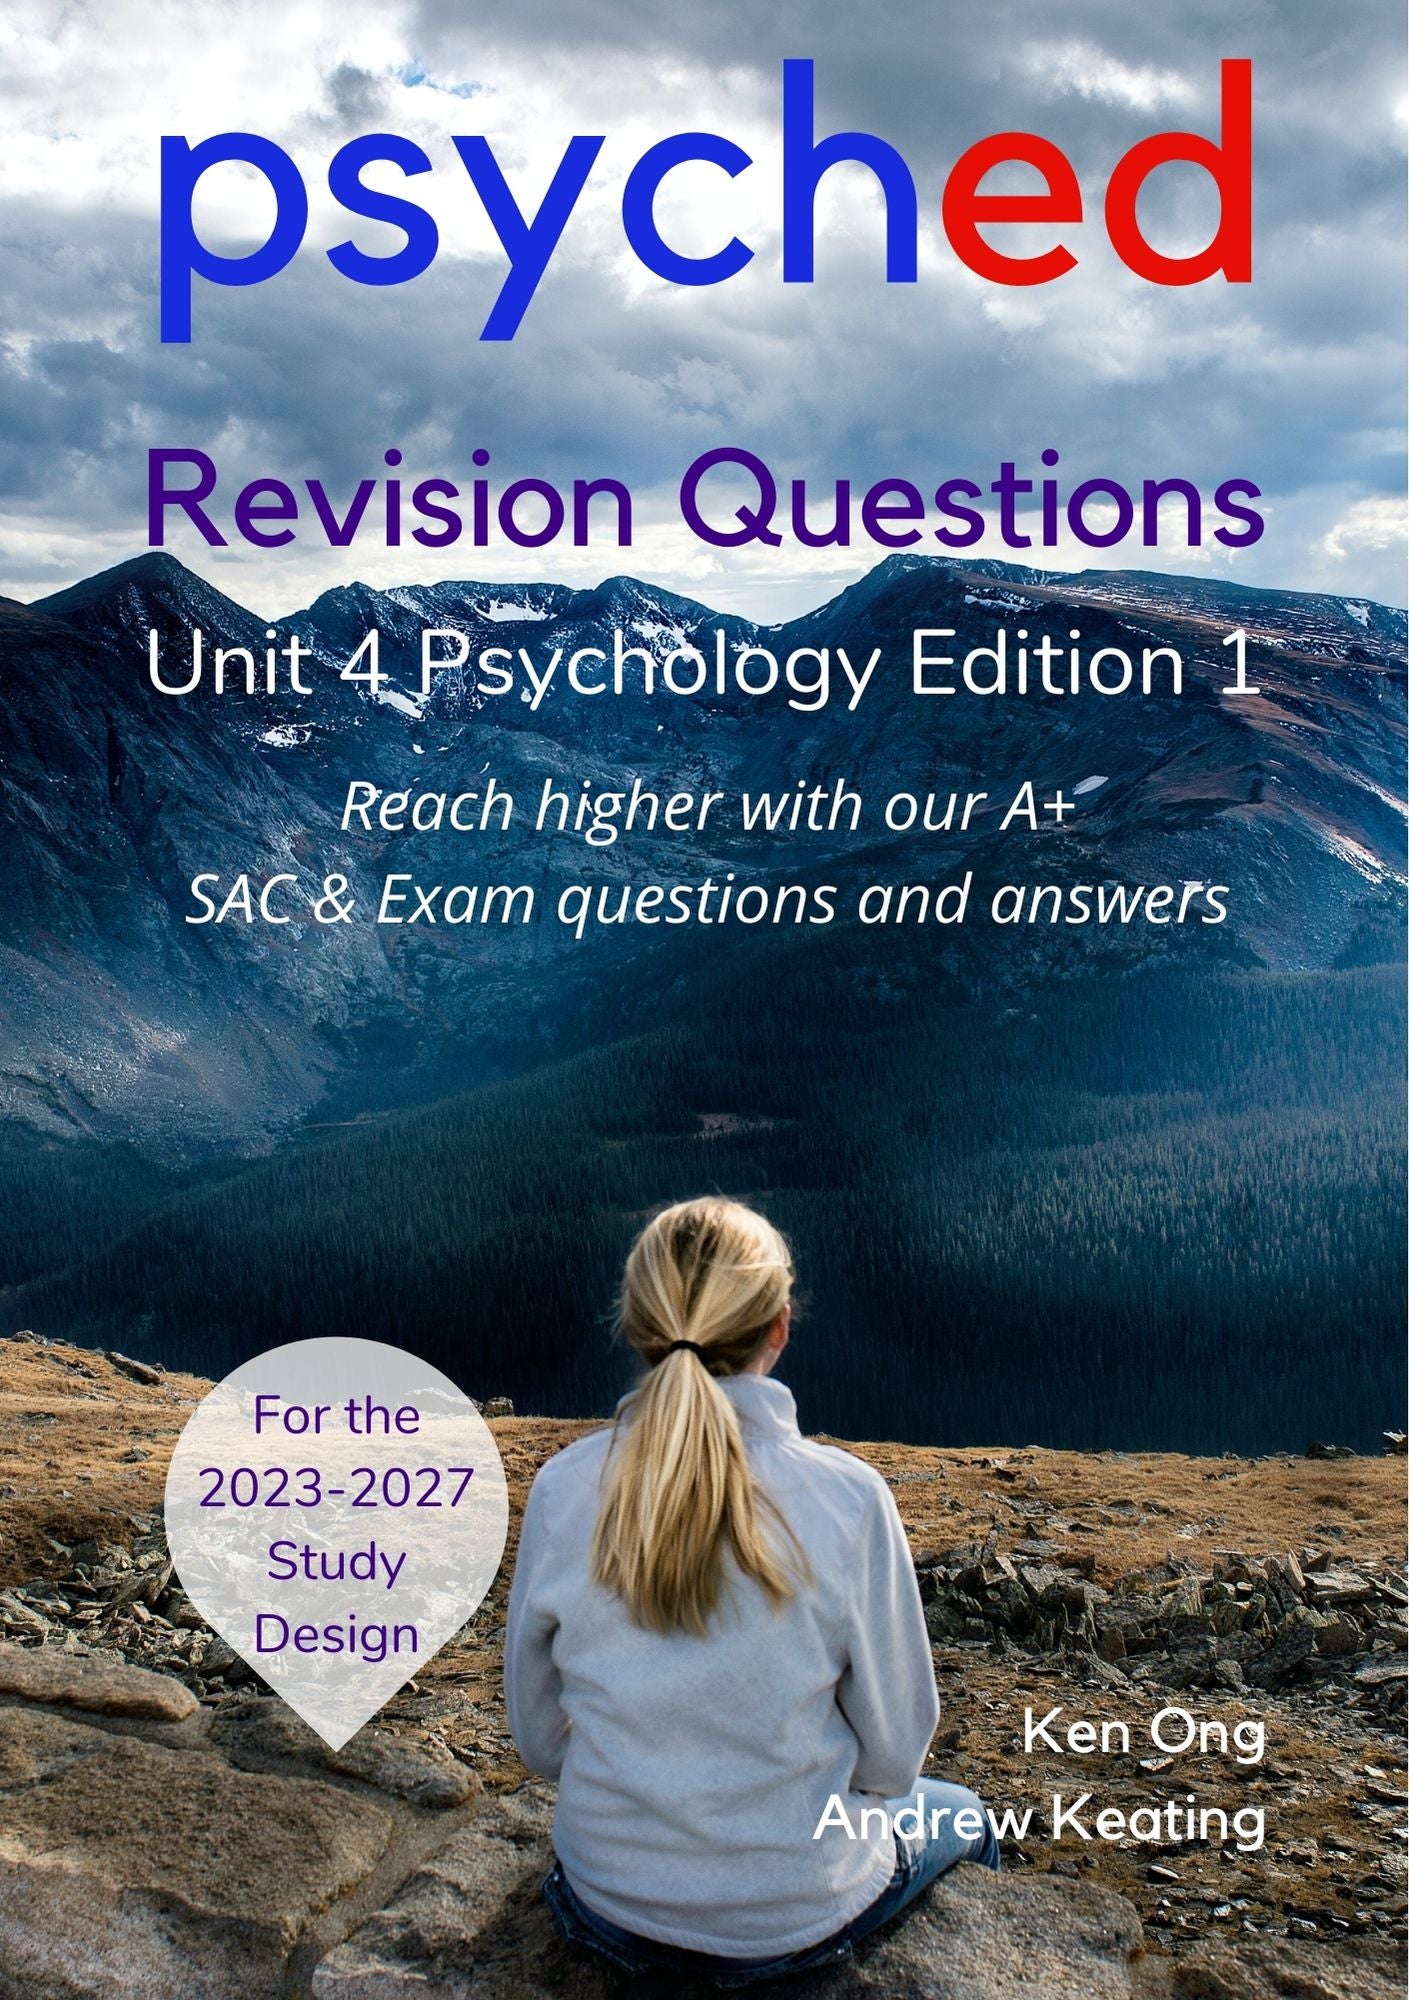 VCE Unit 4 Psychology Head Start Webinar - 2nd June 2024, 1-4pm + Unit 4 Revision Questions Book Bundle